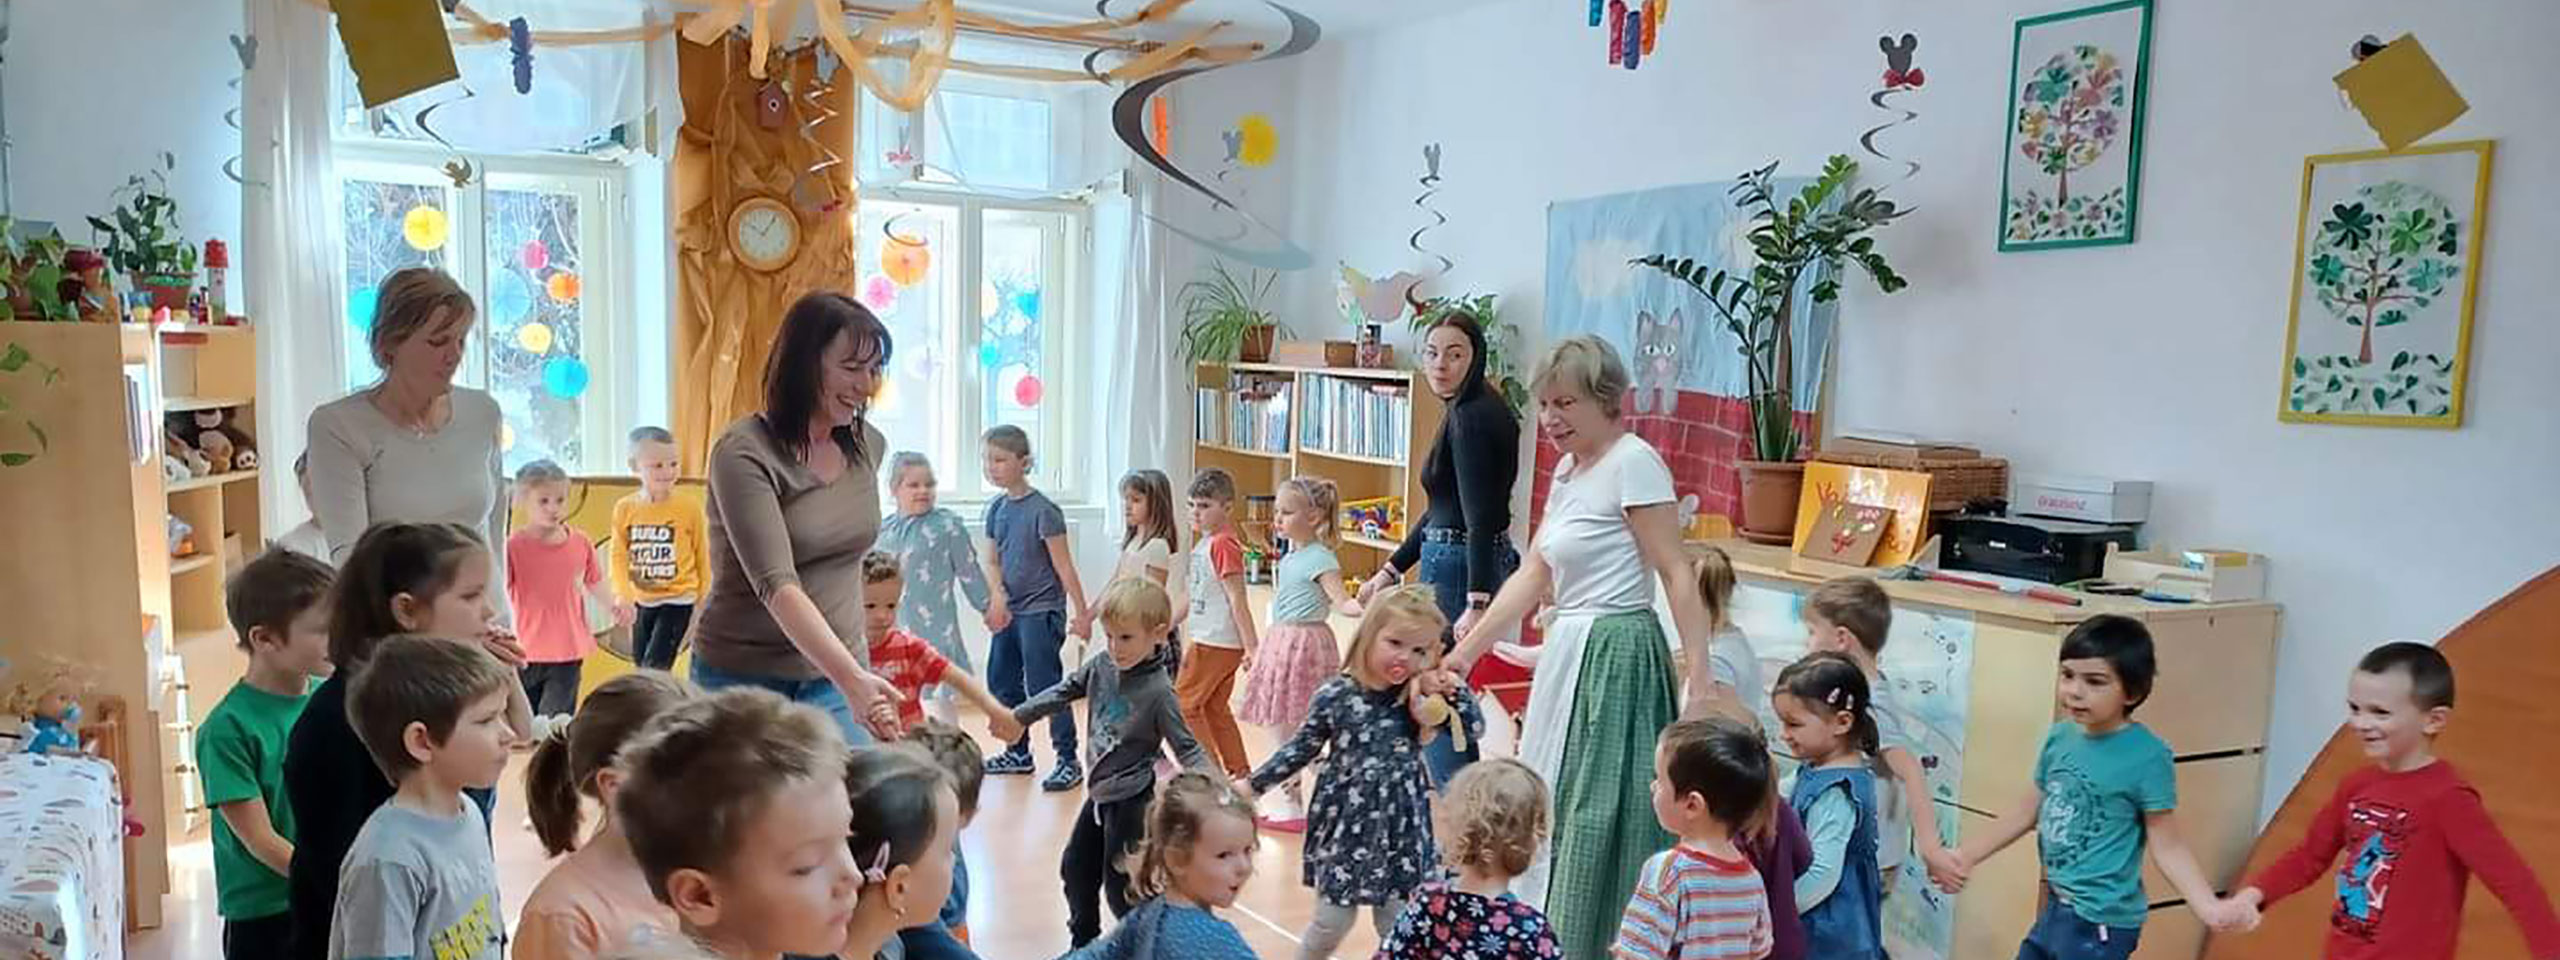 A Fellegvár Óvoda munkatársait ábrázoló fotó, melyen a pedagógusok körben táncolnak a gyerekekkel